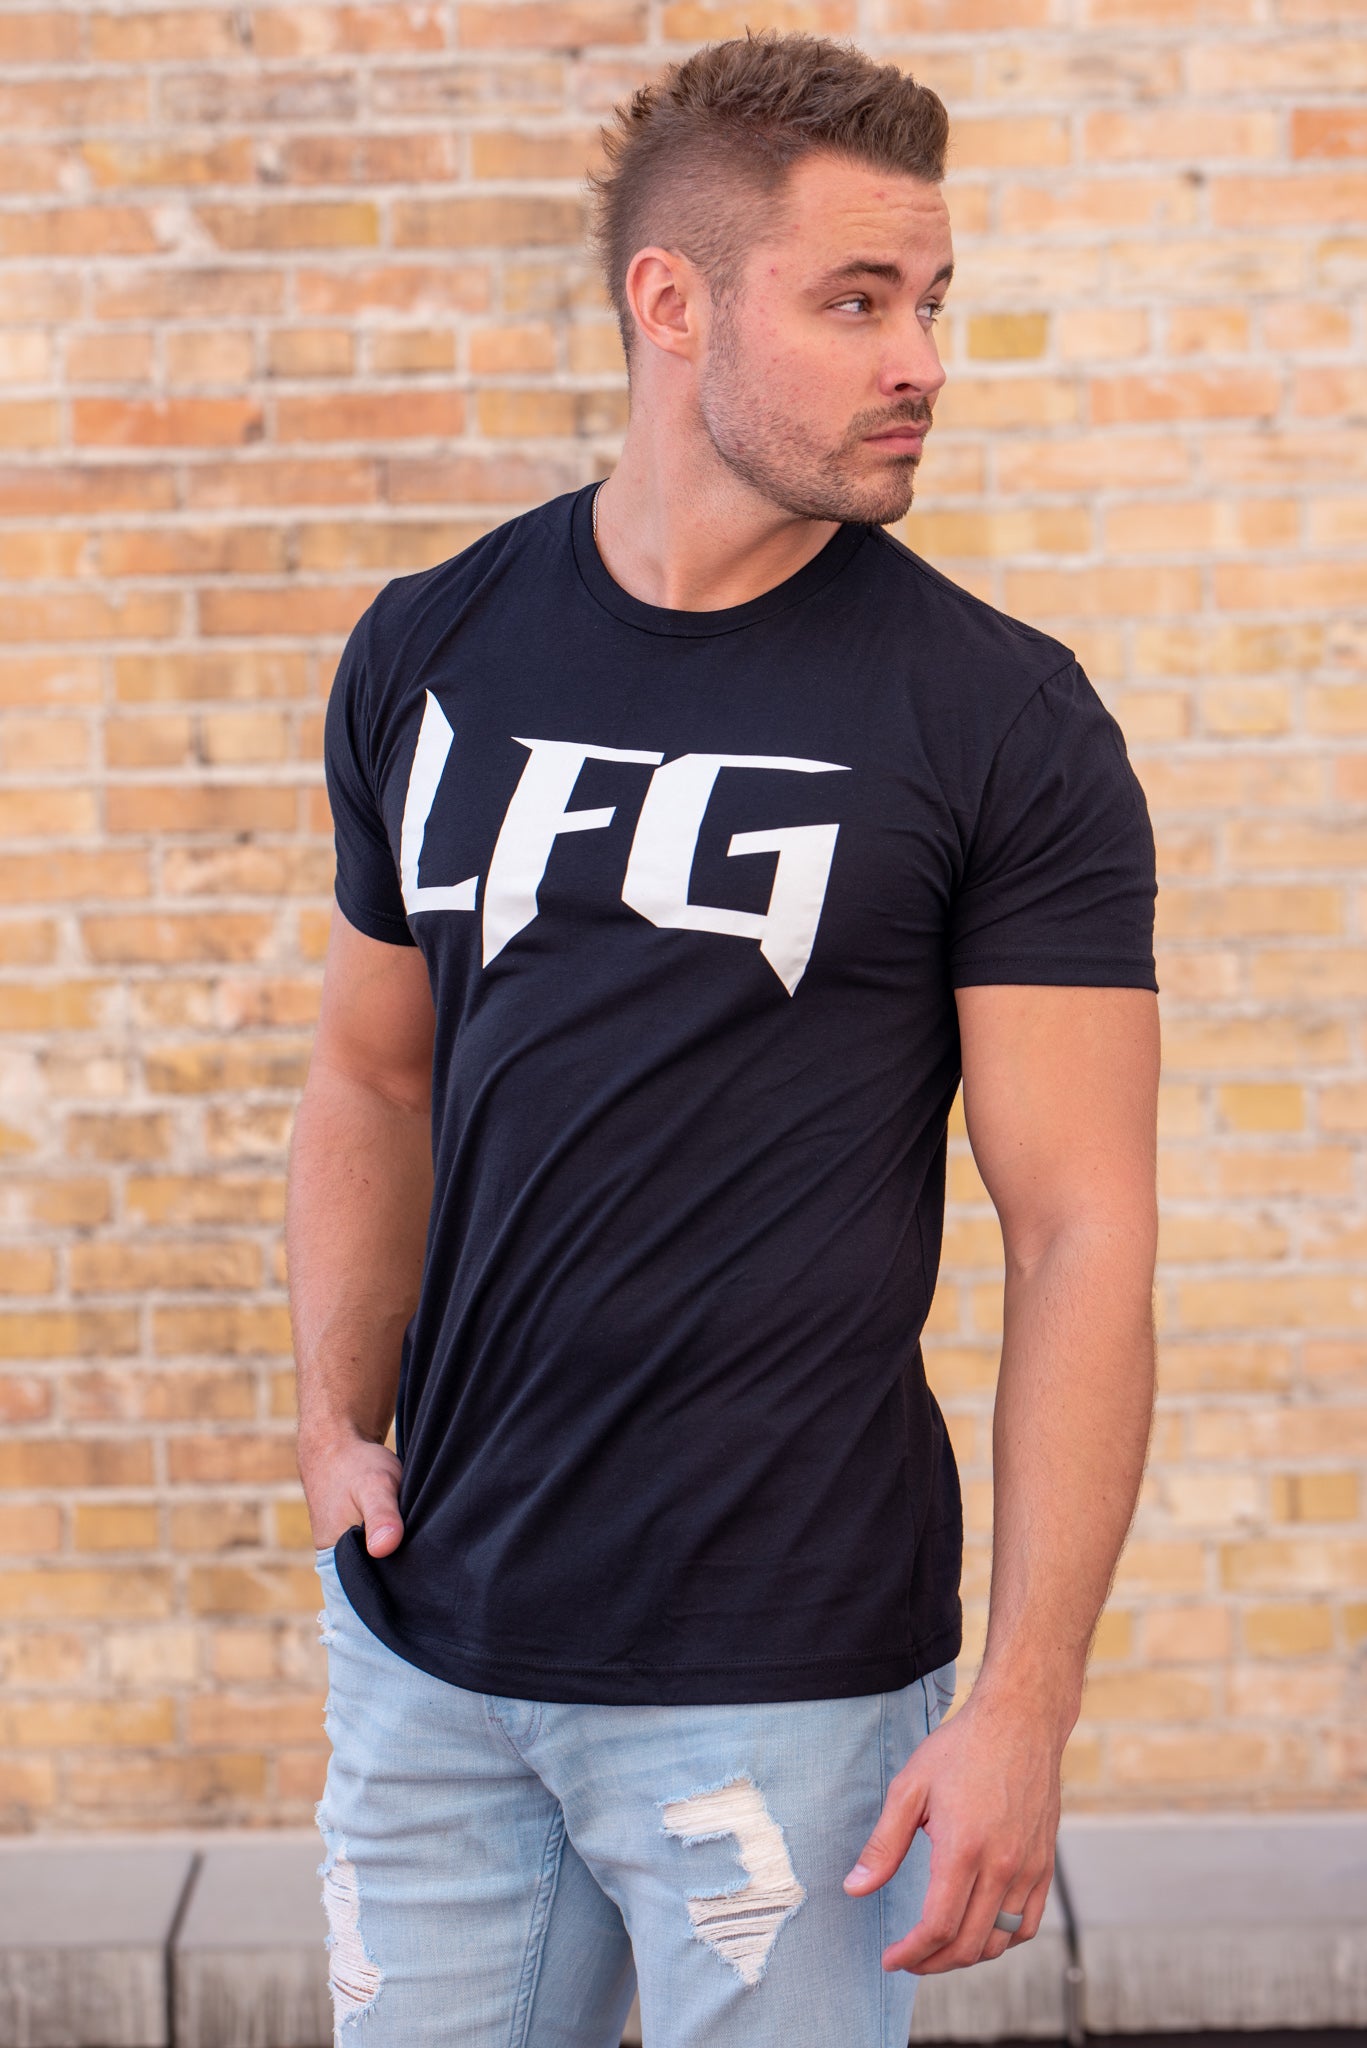 lfg tb12 shirt